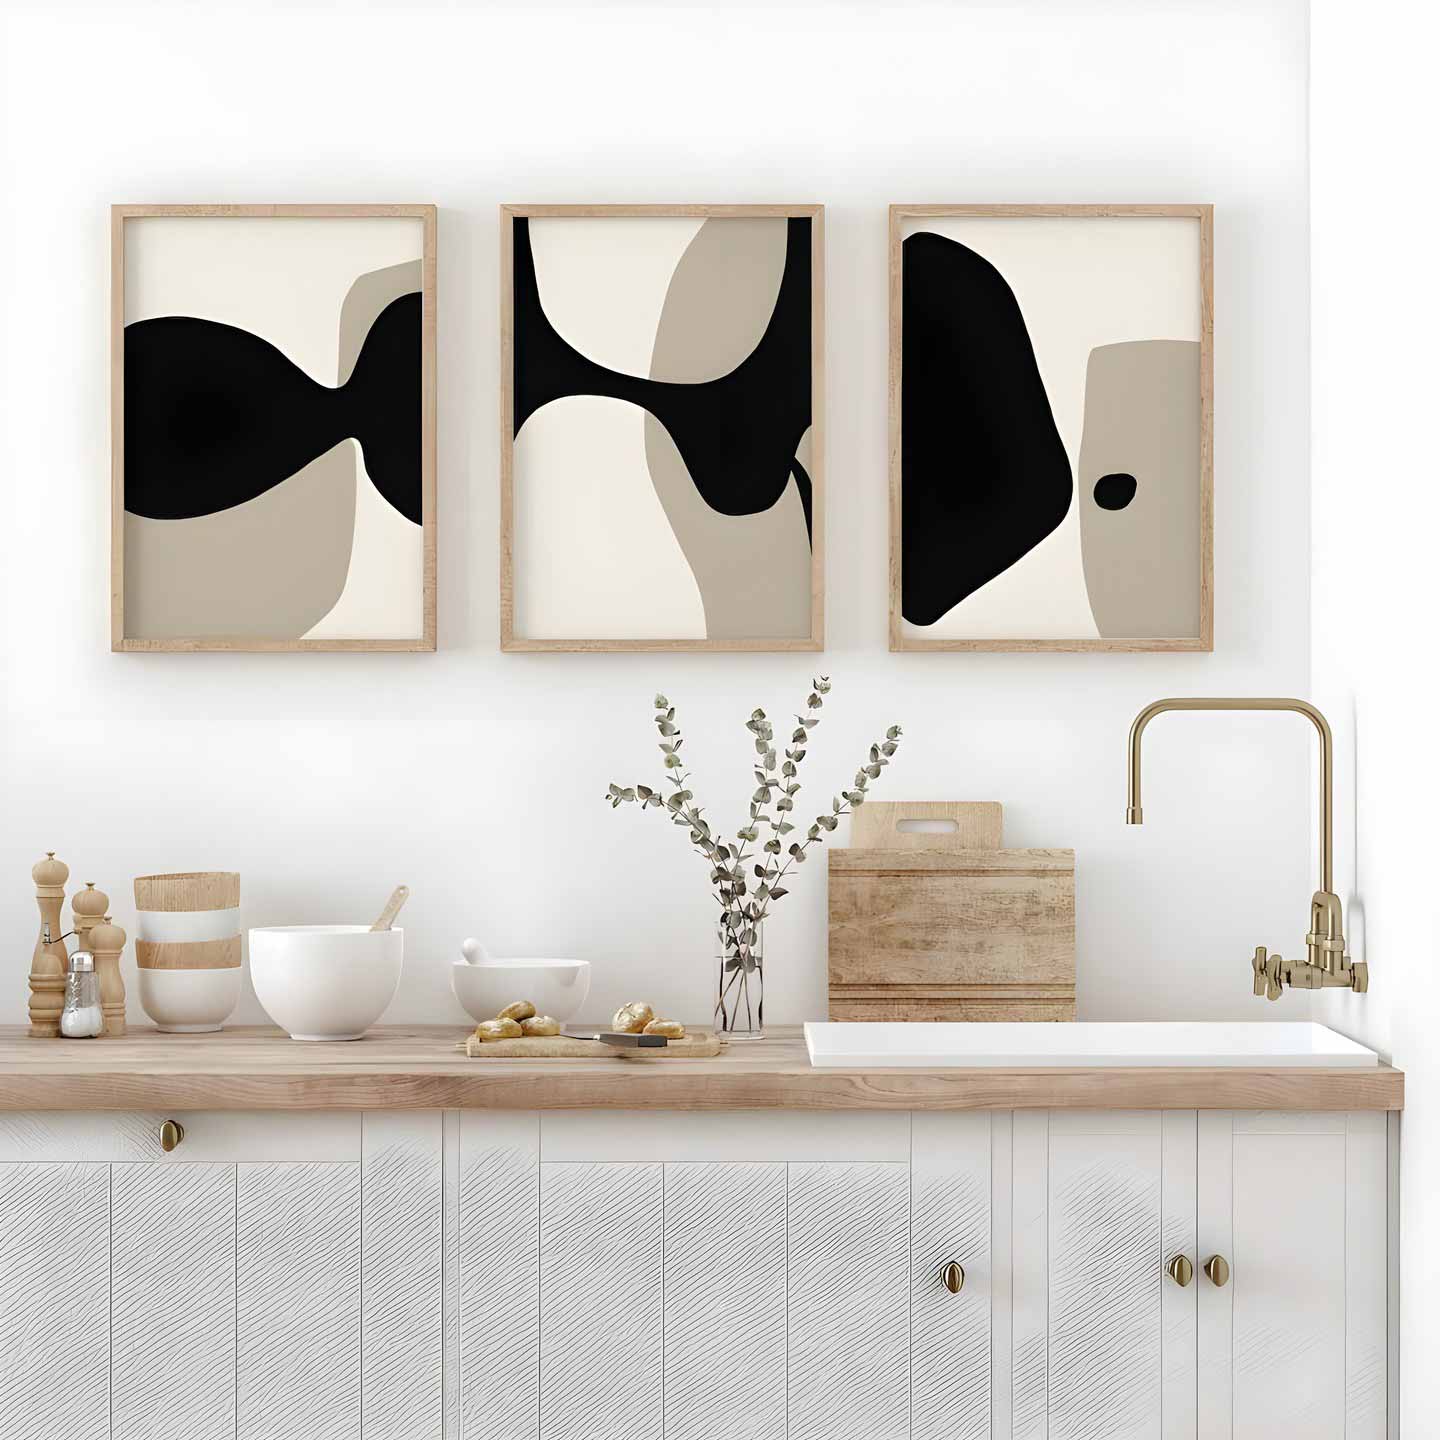 Three framed minimal artworks hanging inside kitchen